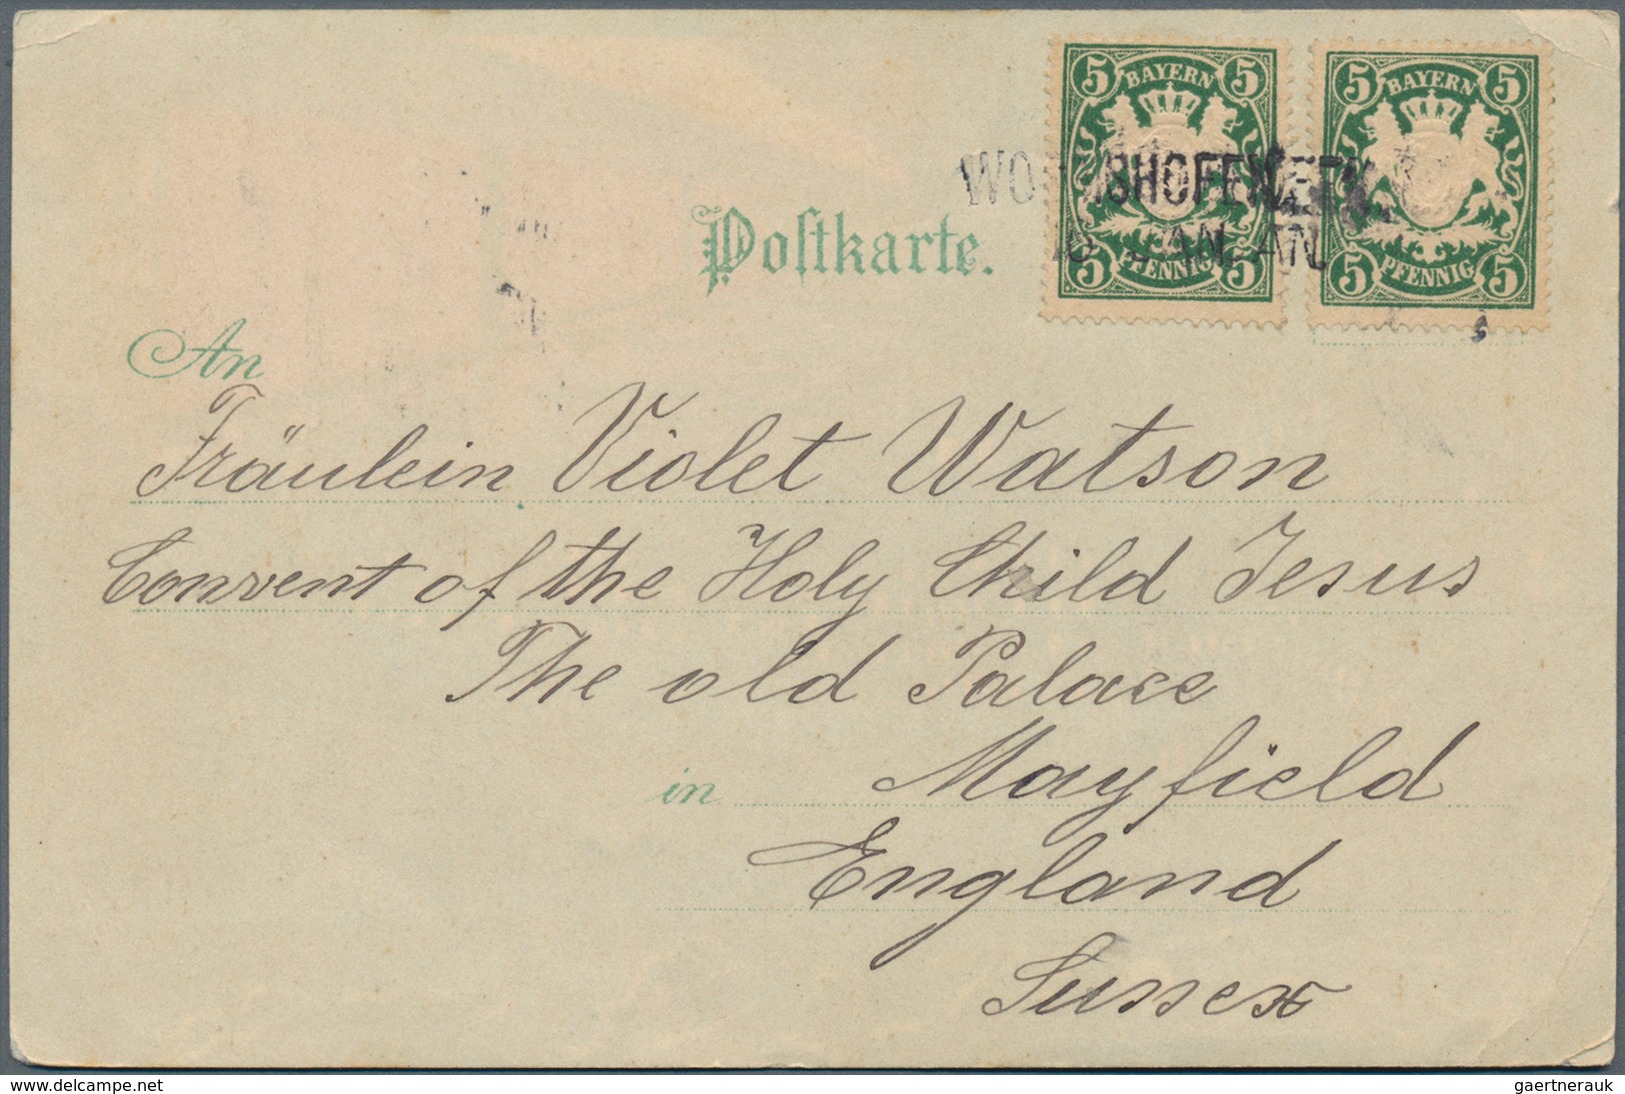 Bayern - Marken und Briefe: 1876-1920 inkl. Porto und Dienst, tolle Sammlung von ca. 620 Belegen mit